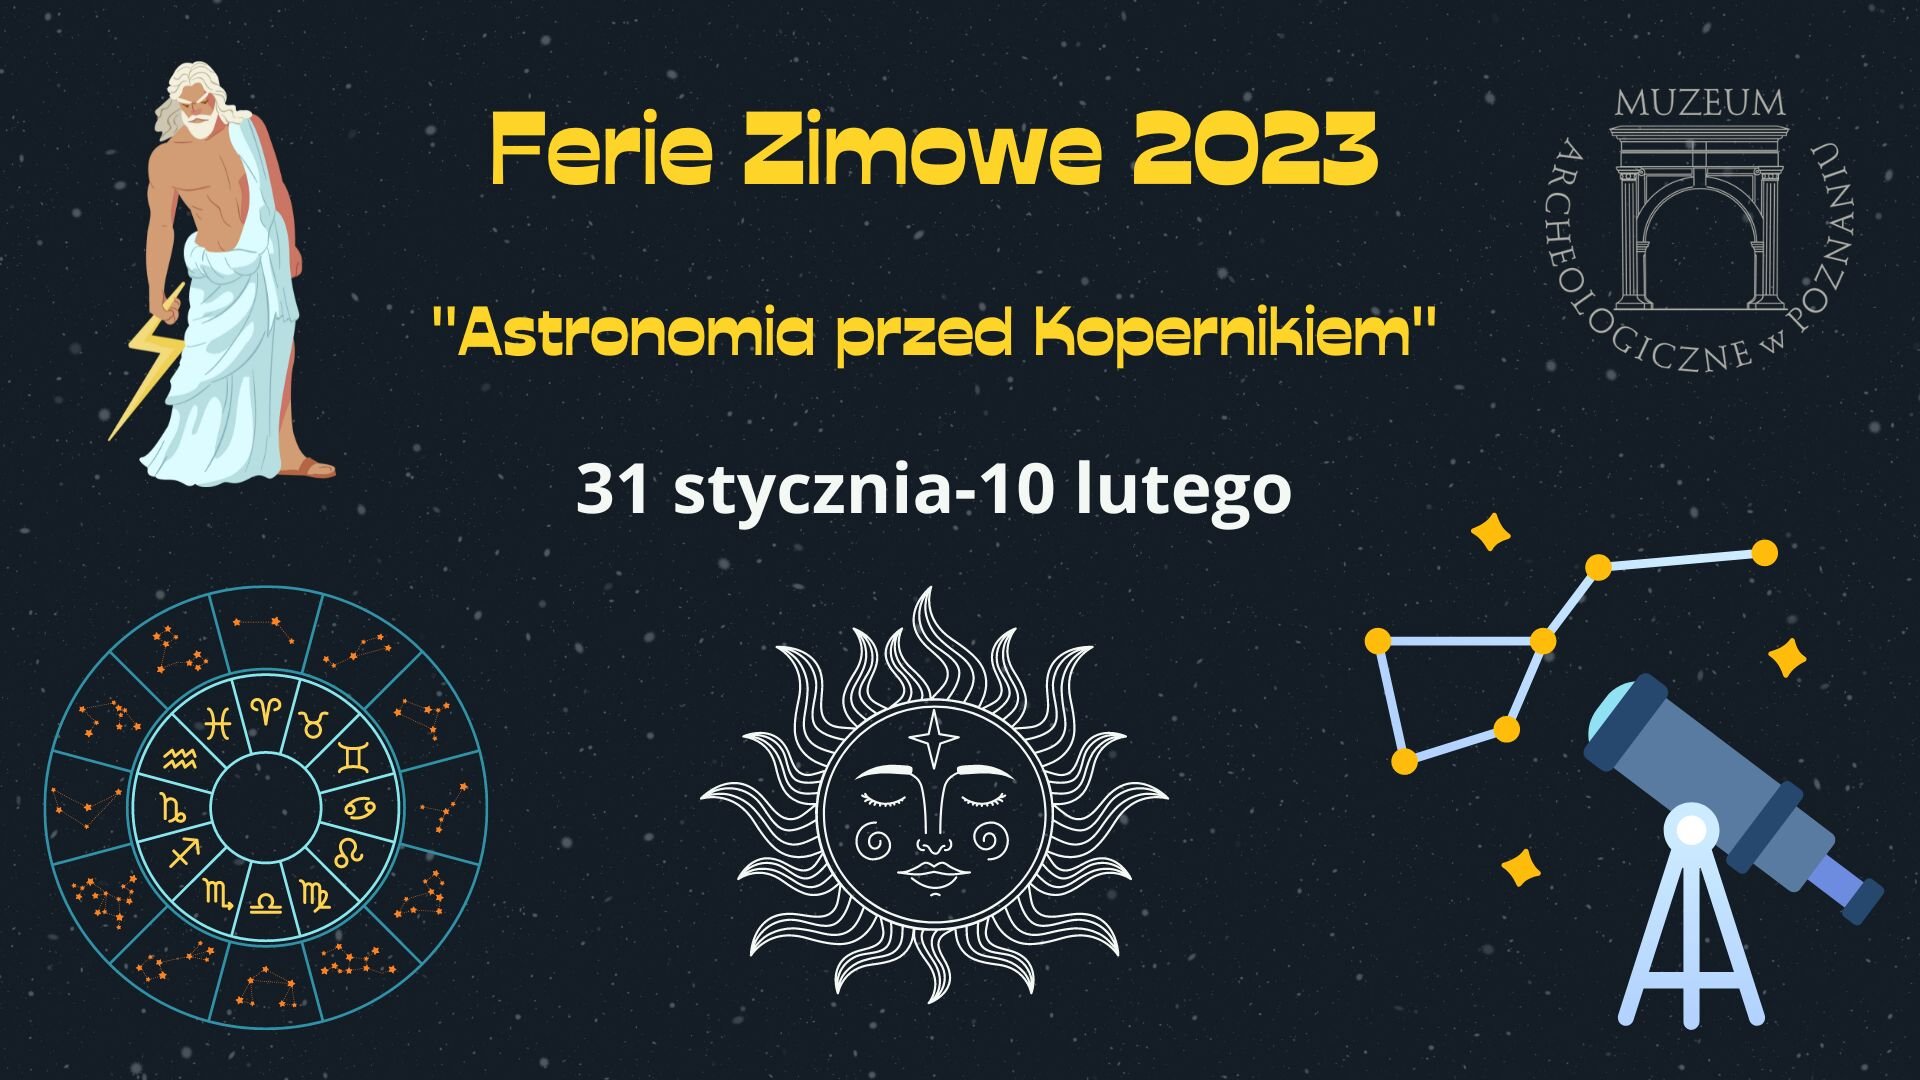 Plakat z informacjami o wydarzeniu i elementami graficznymi - posejdonem, teleskopem, słońcem i znakami zodiaku